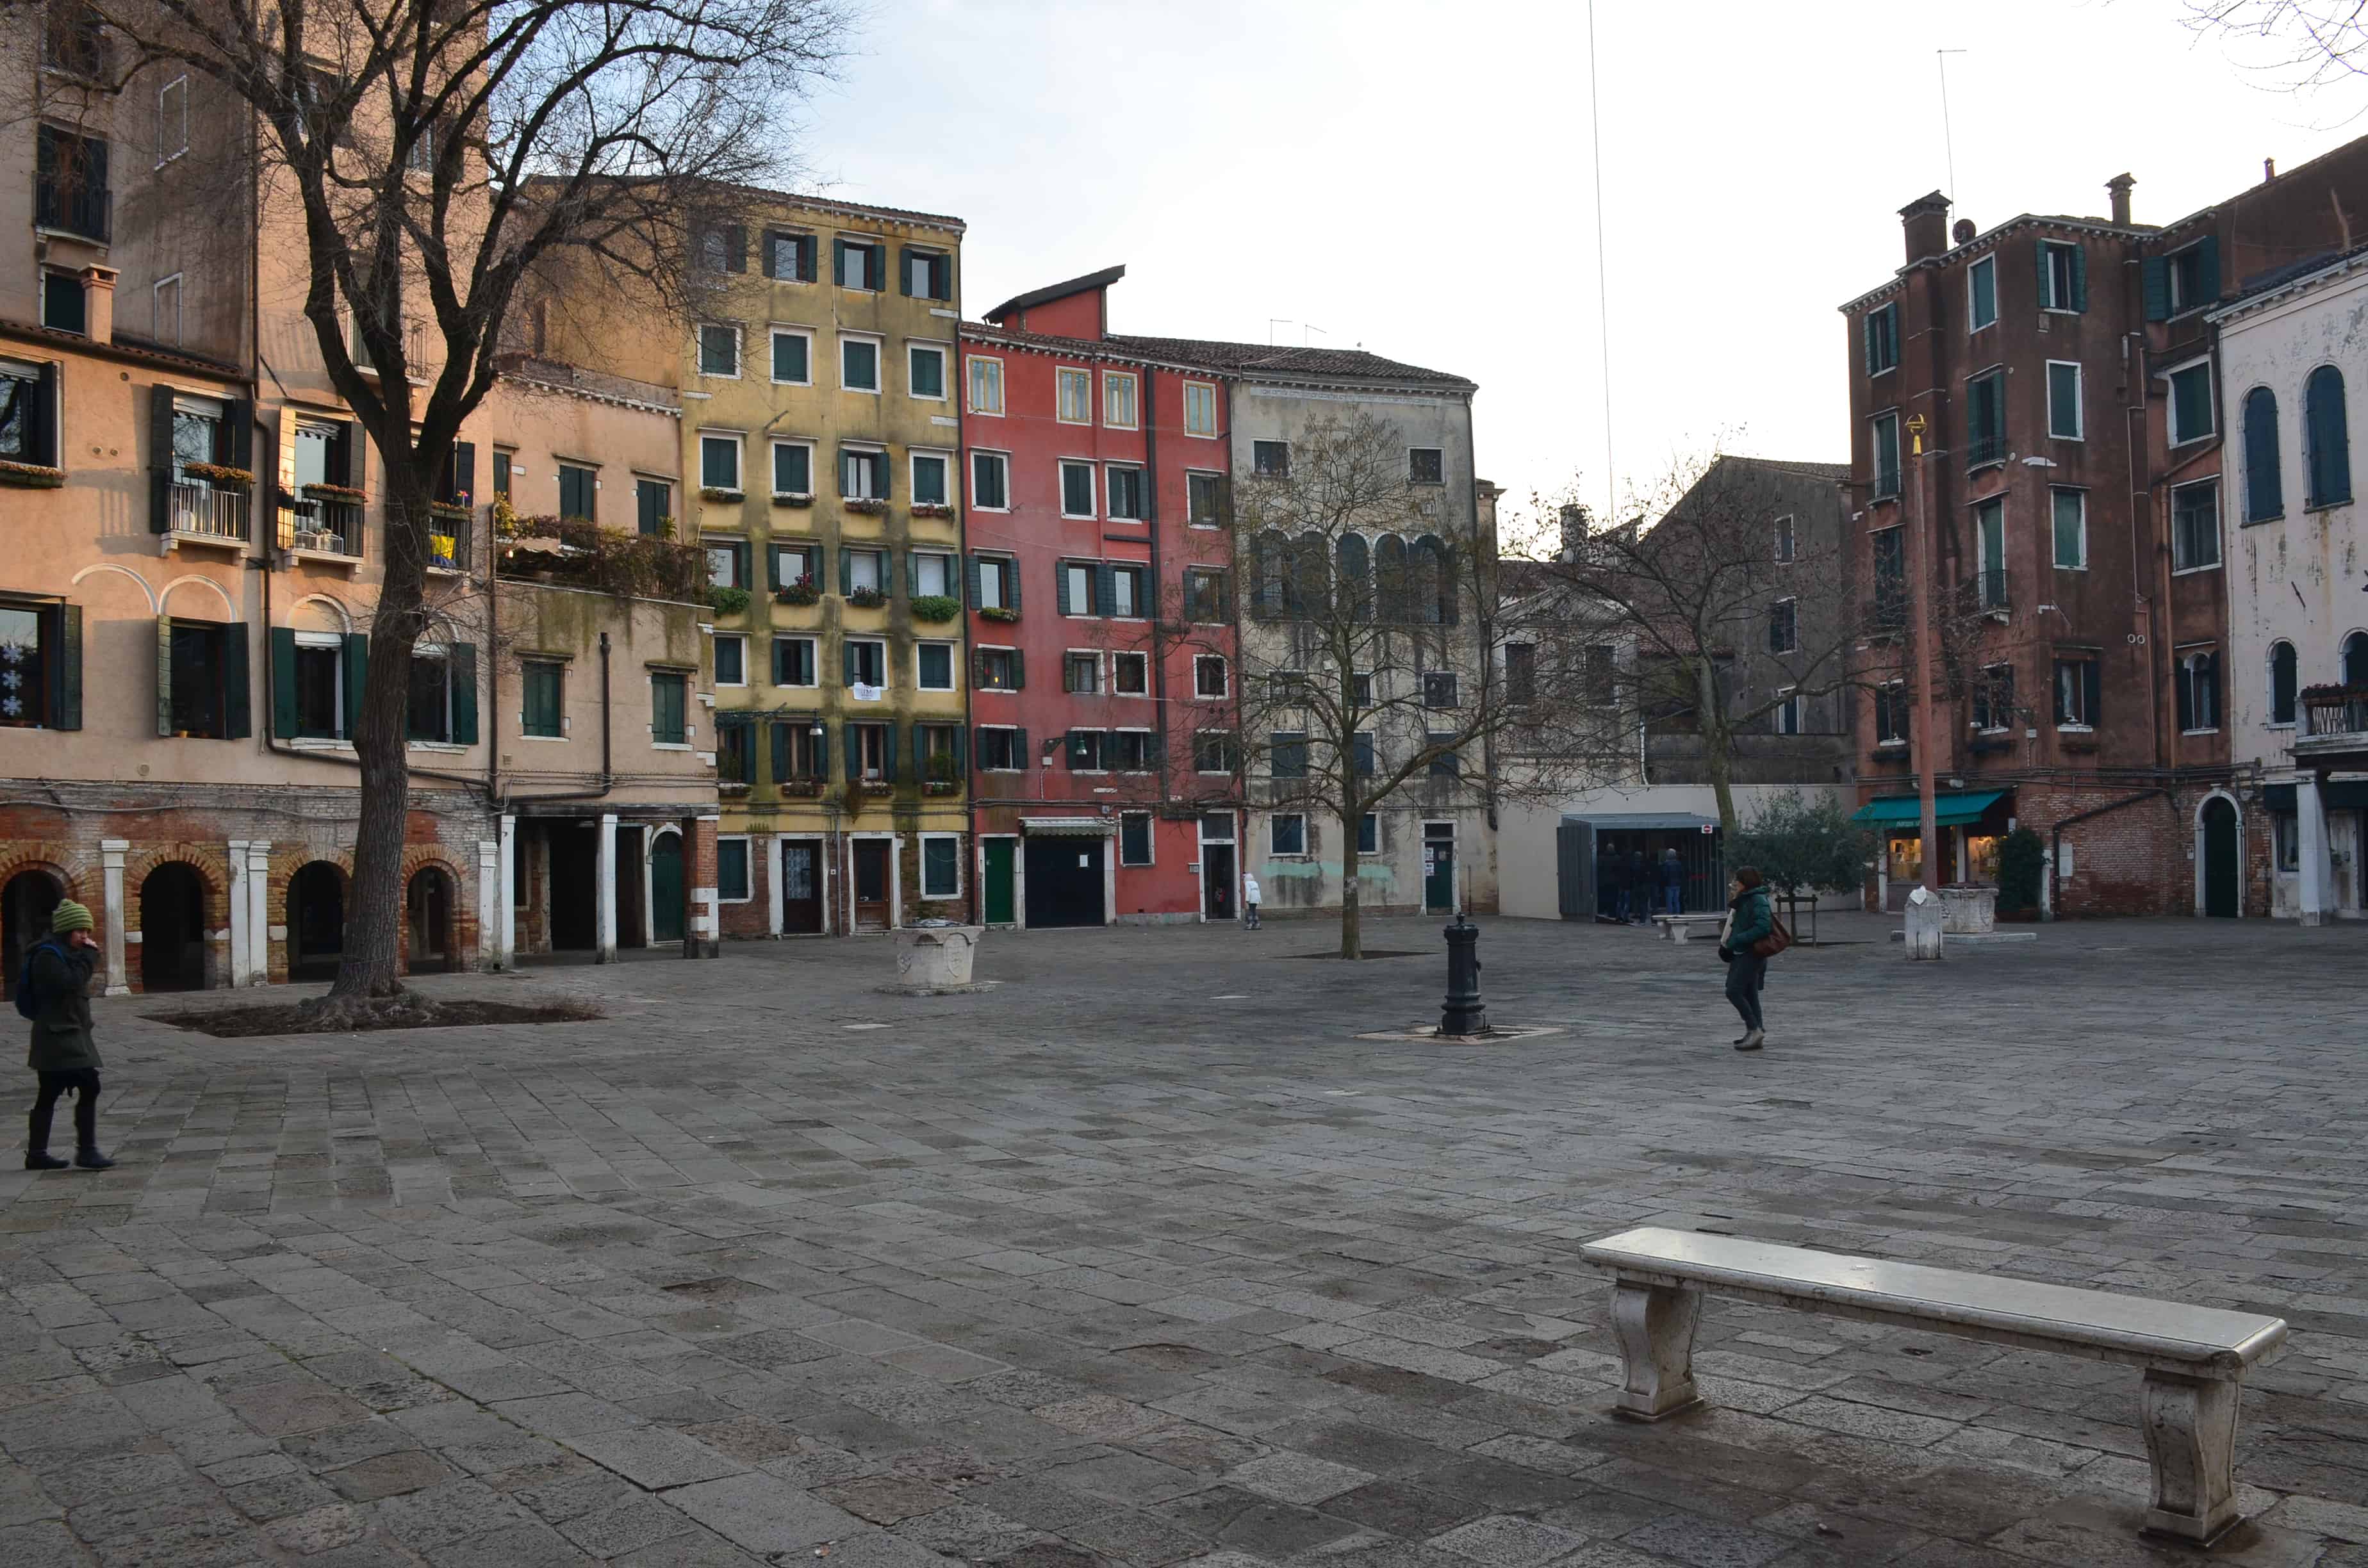 Campo di Ghetto Nuovo in Venice, Italy